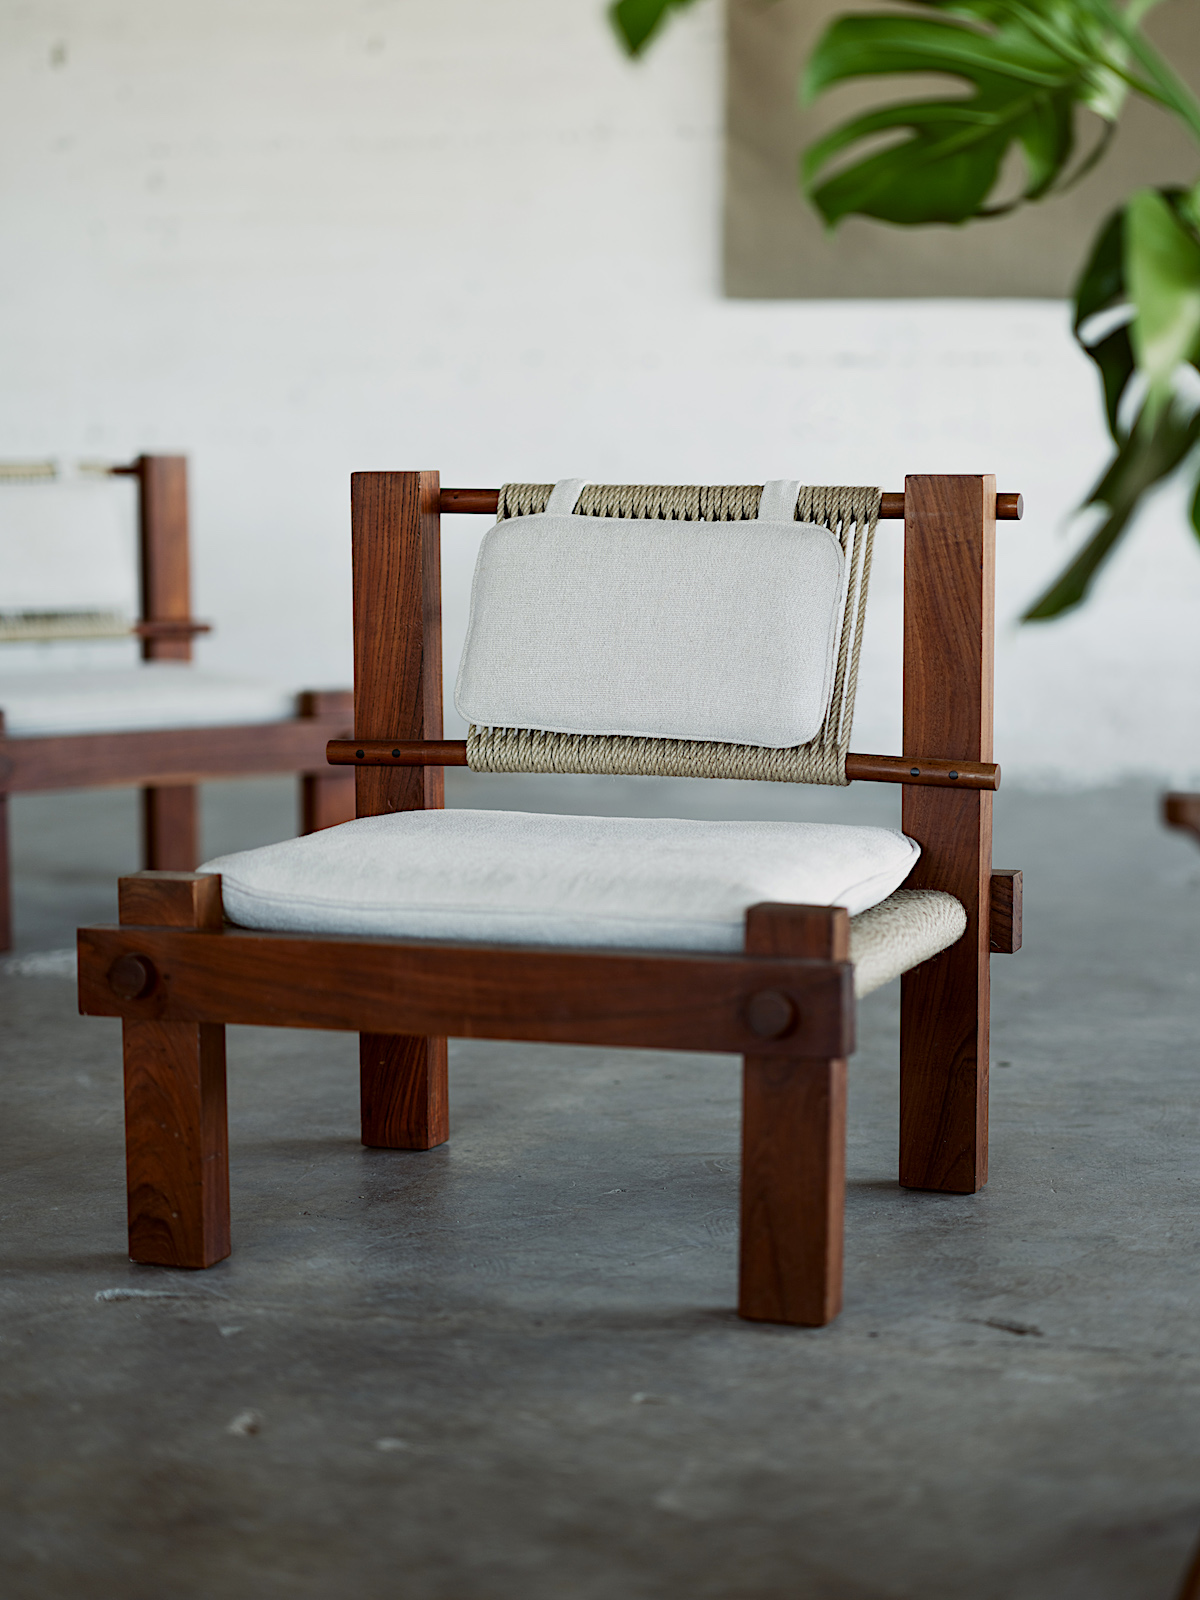 A Lounge Chair by Mini Boga for Taaru - vosgesparis